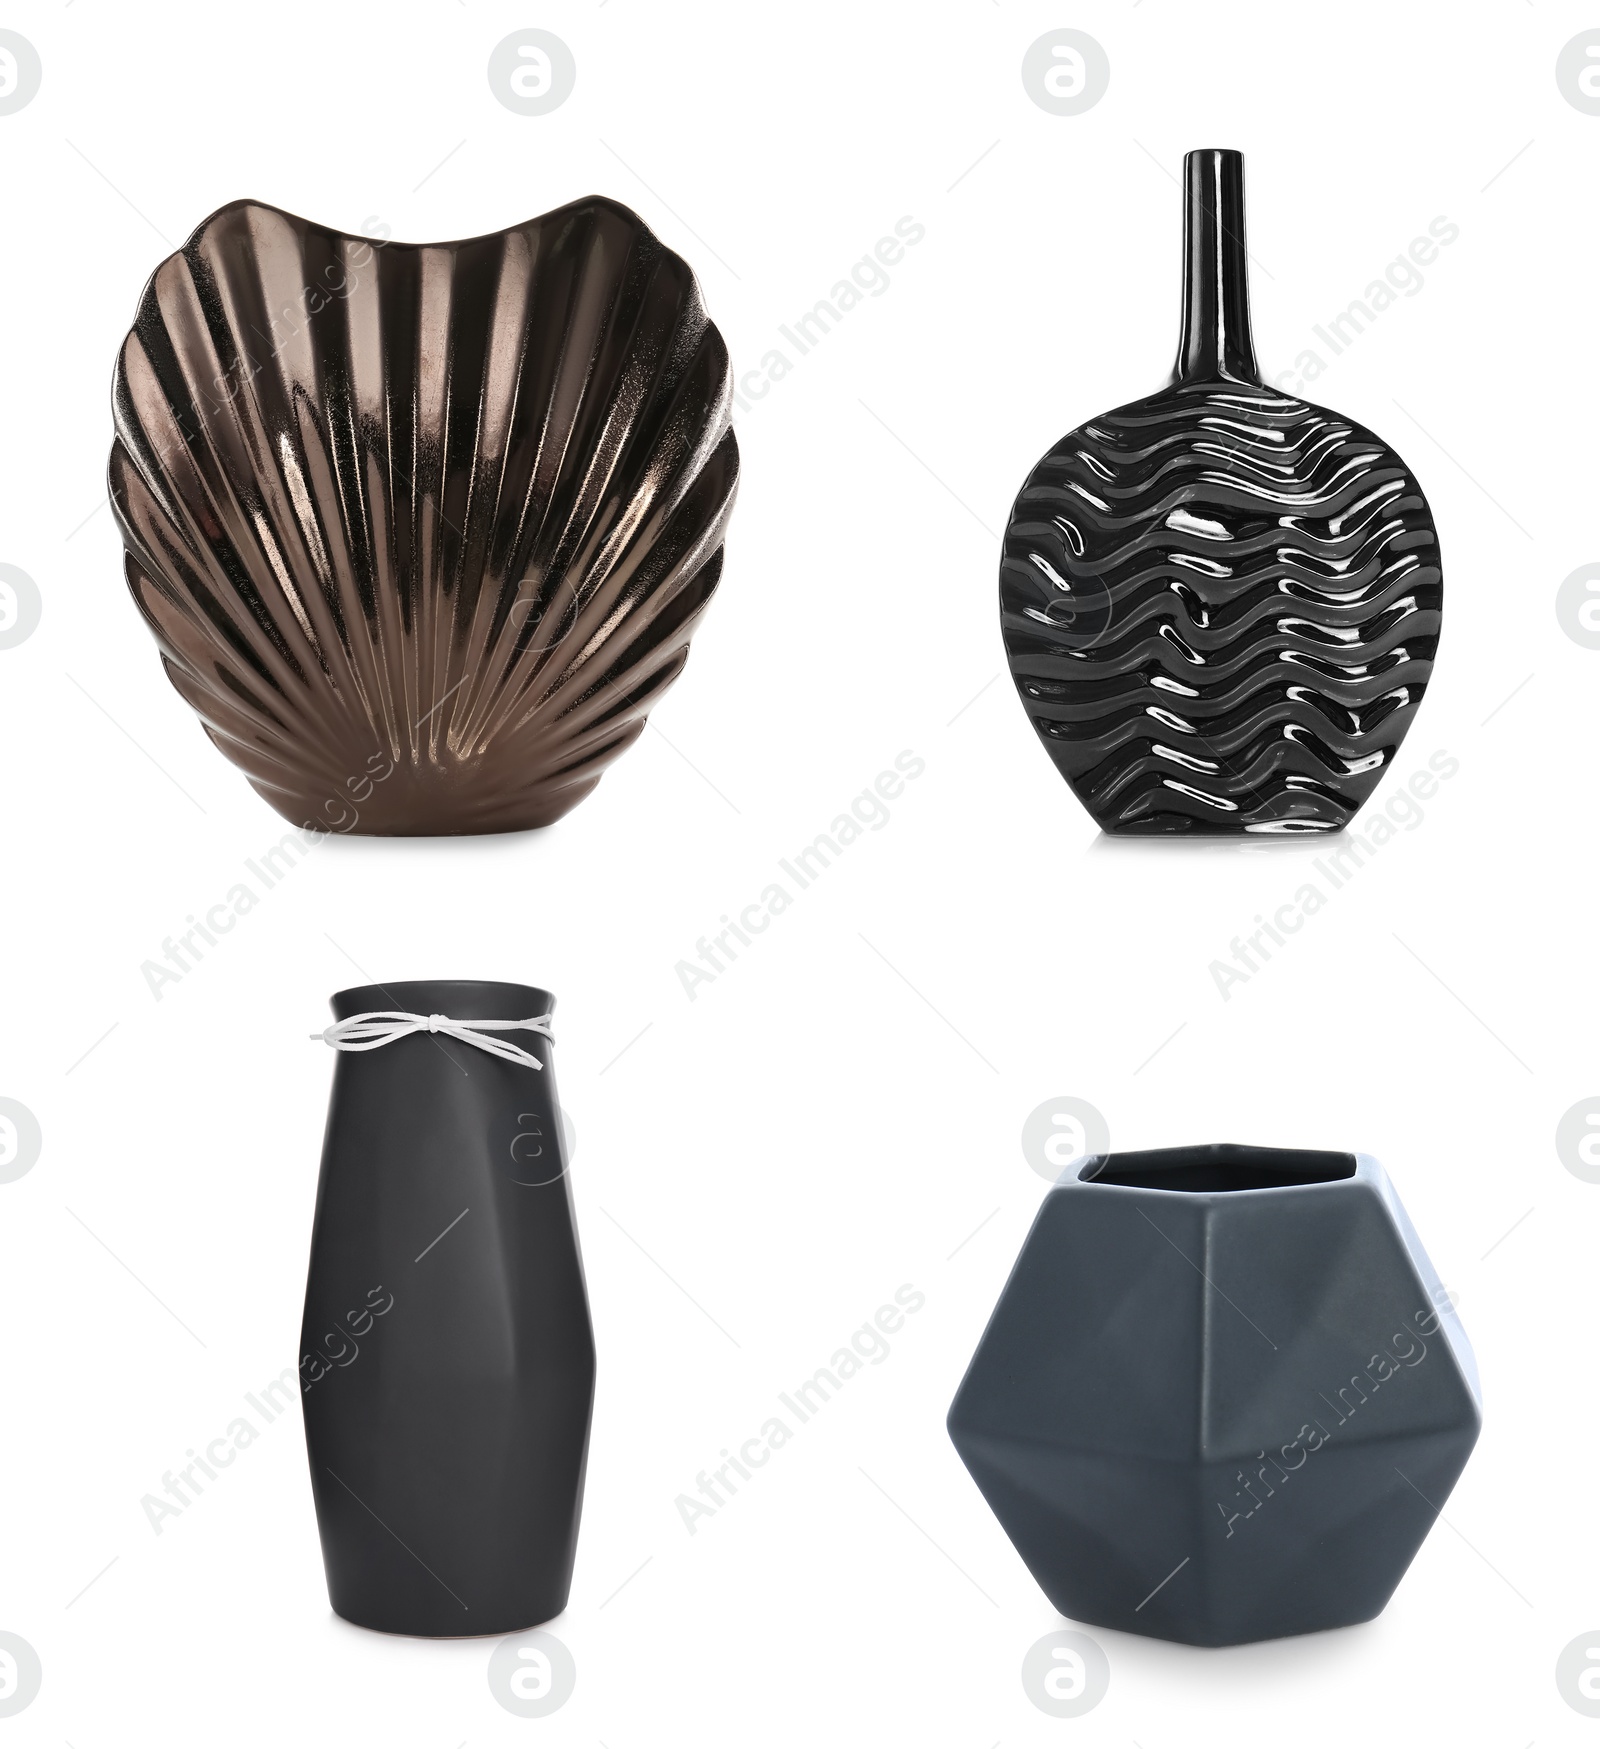 Image of Set of beautiful dark ceramic vases on white background 